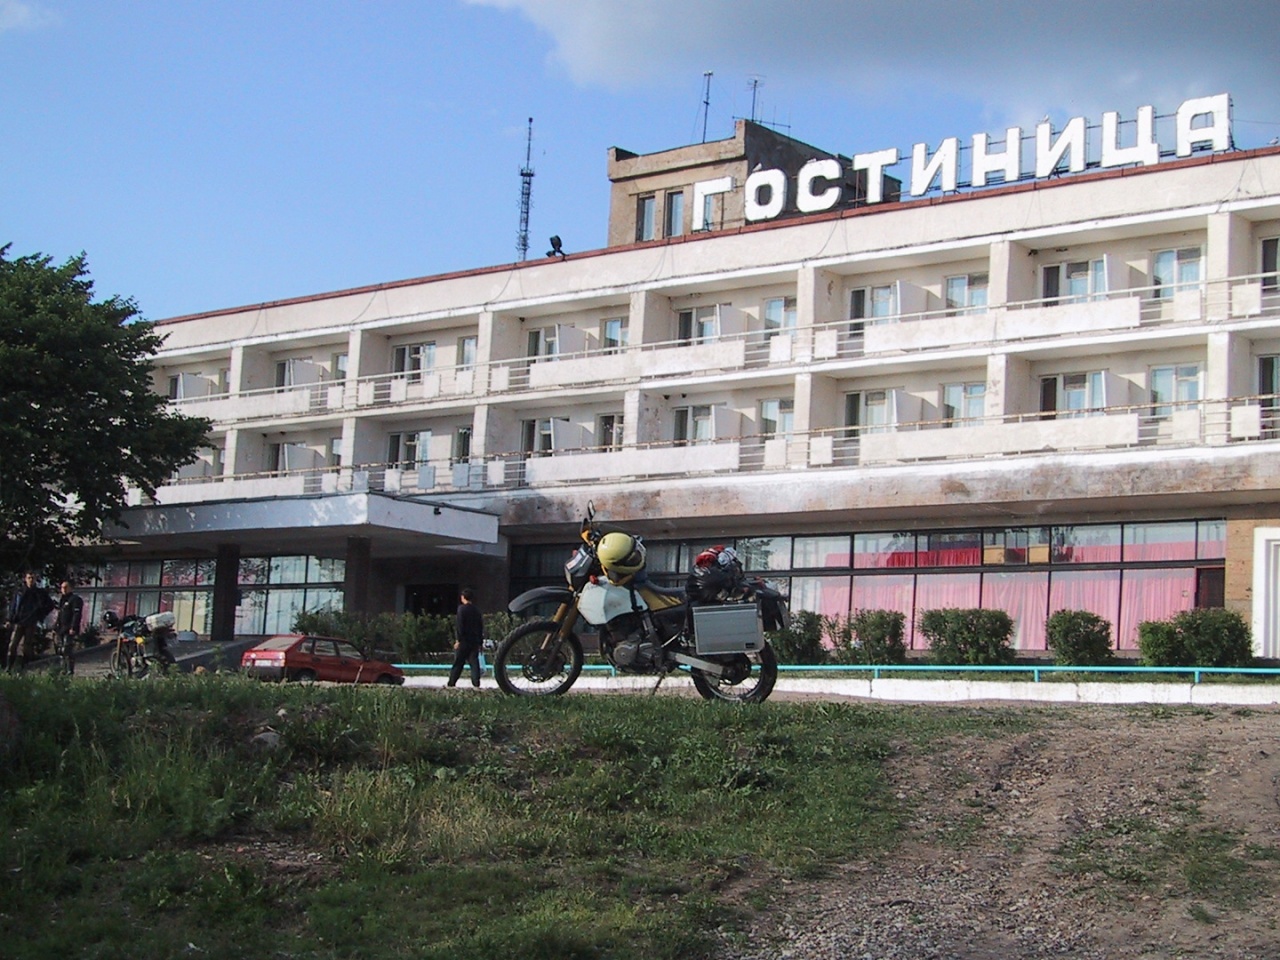 20020609_1747-Hotel_in_Novgorod